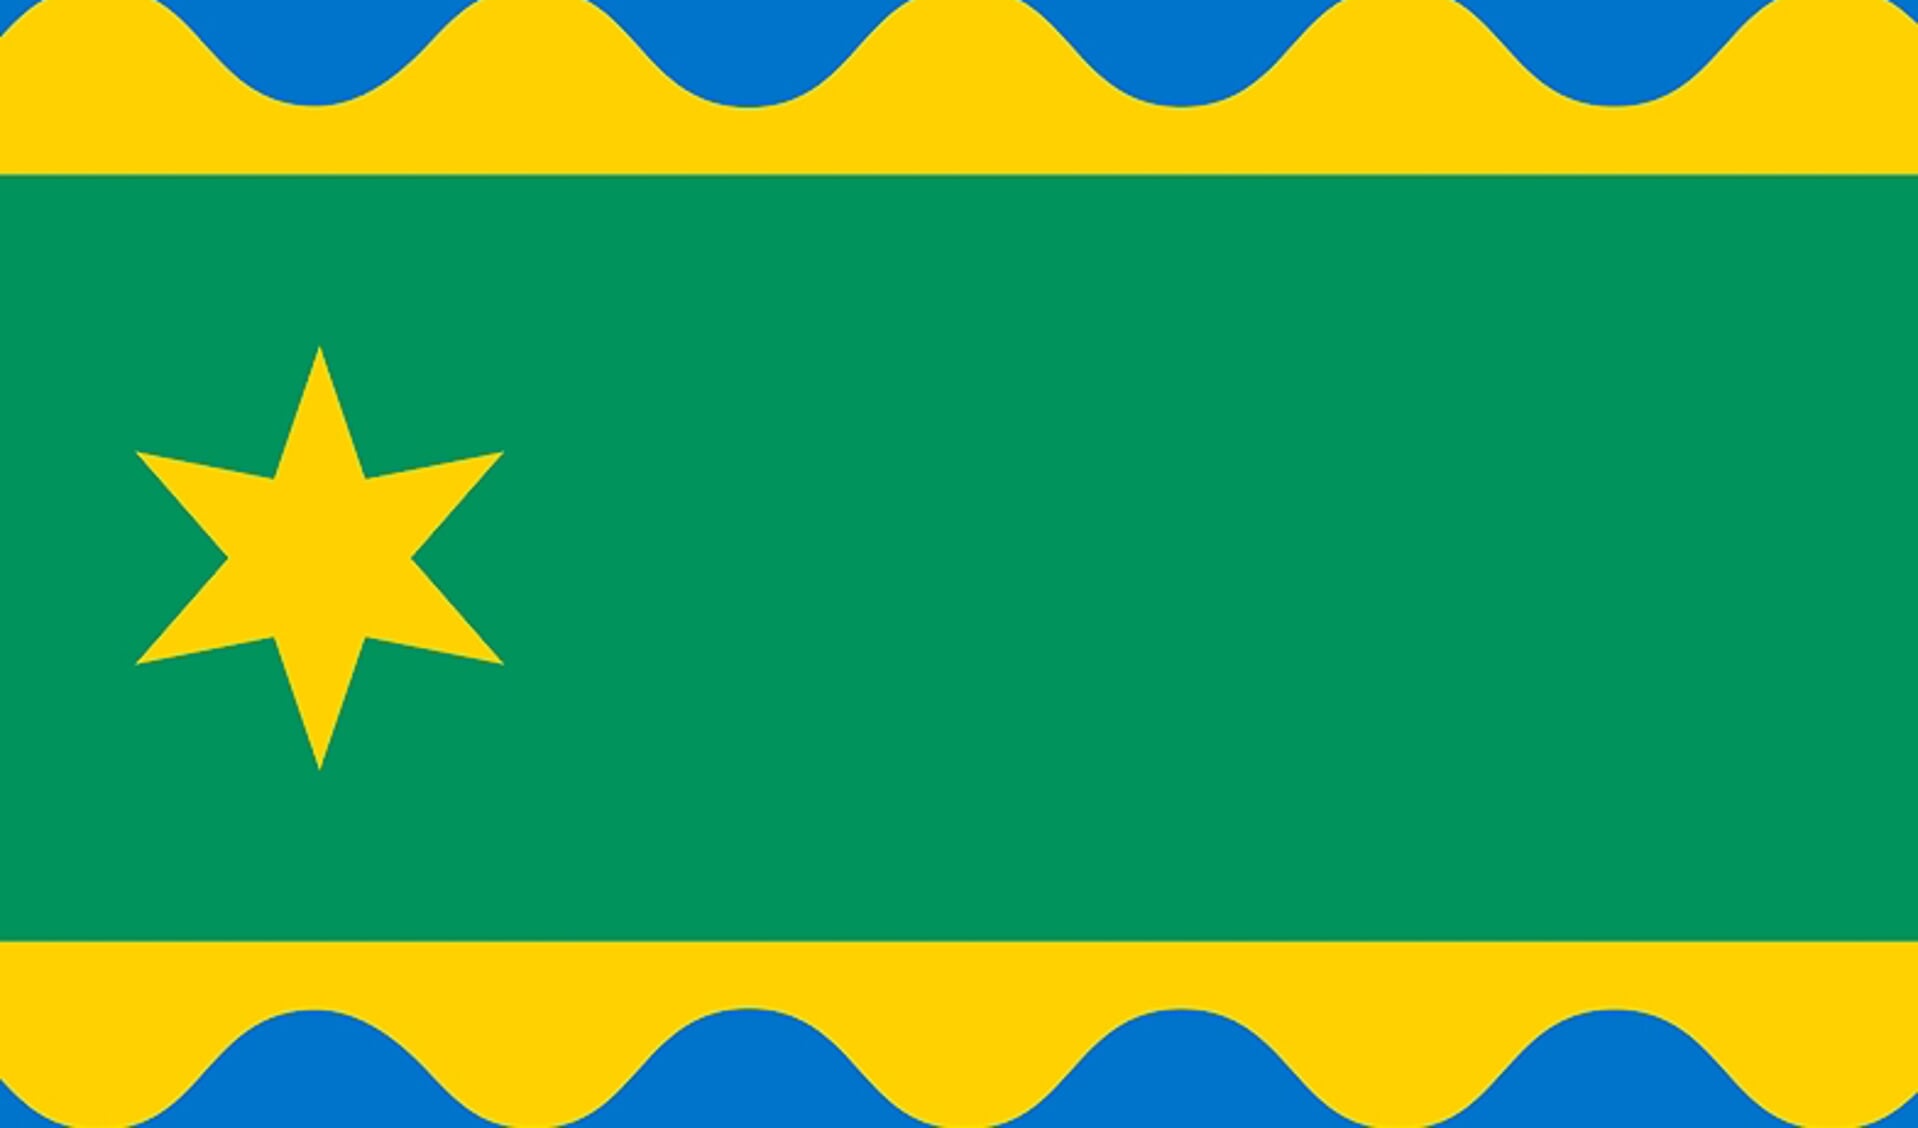 De nieuwe versie van de door de gemeenteraad goedgekeurde vlag van Noardeast-Fryslân. 